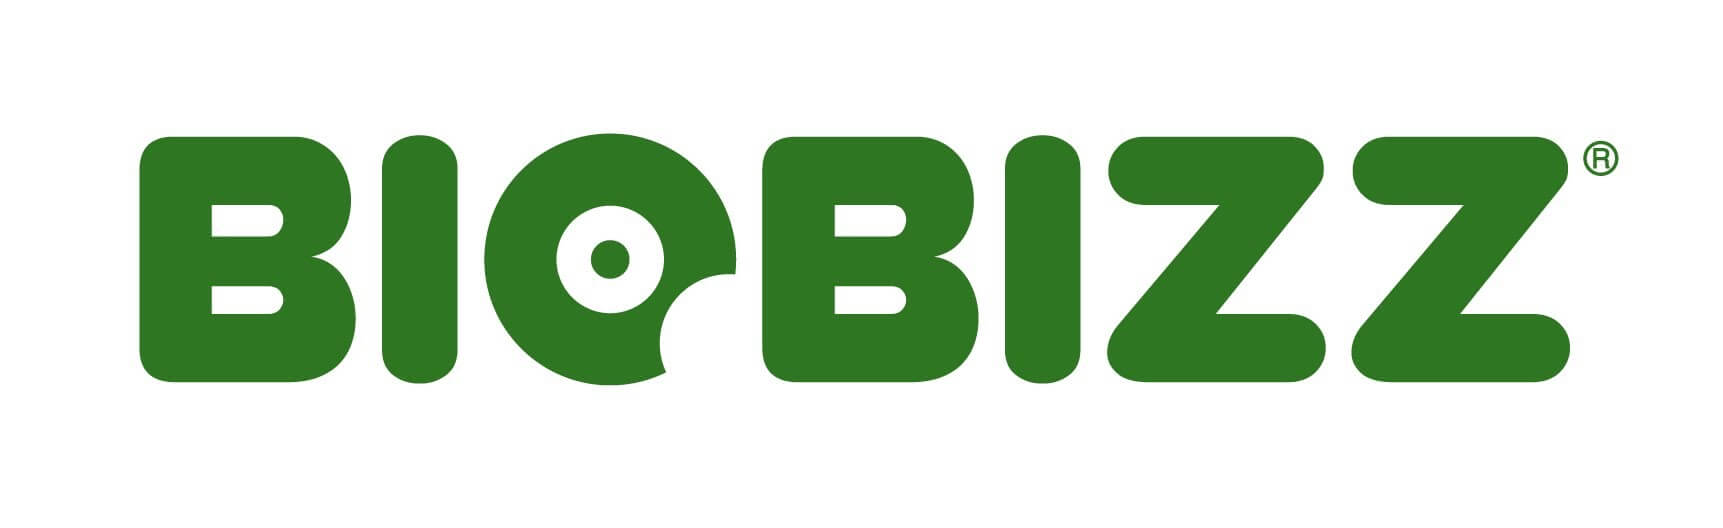 Biobizz - A.R.T.S